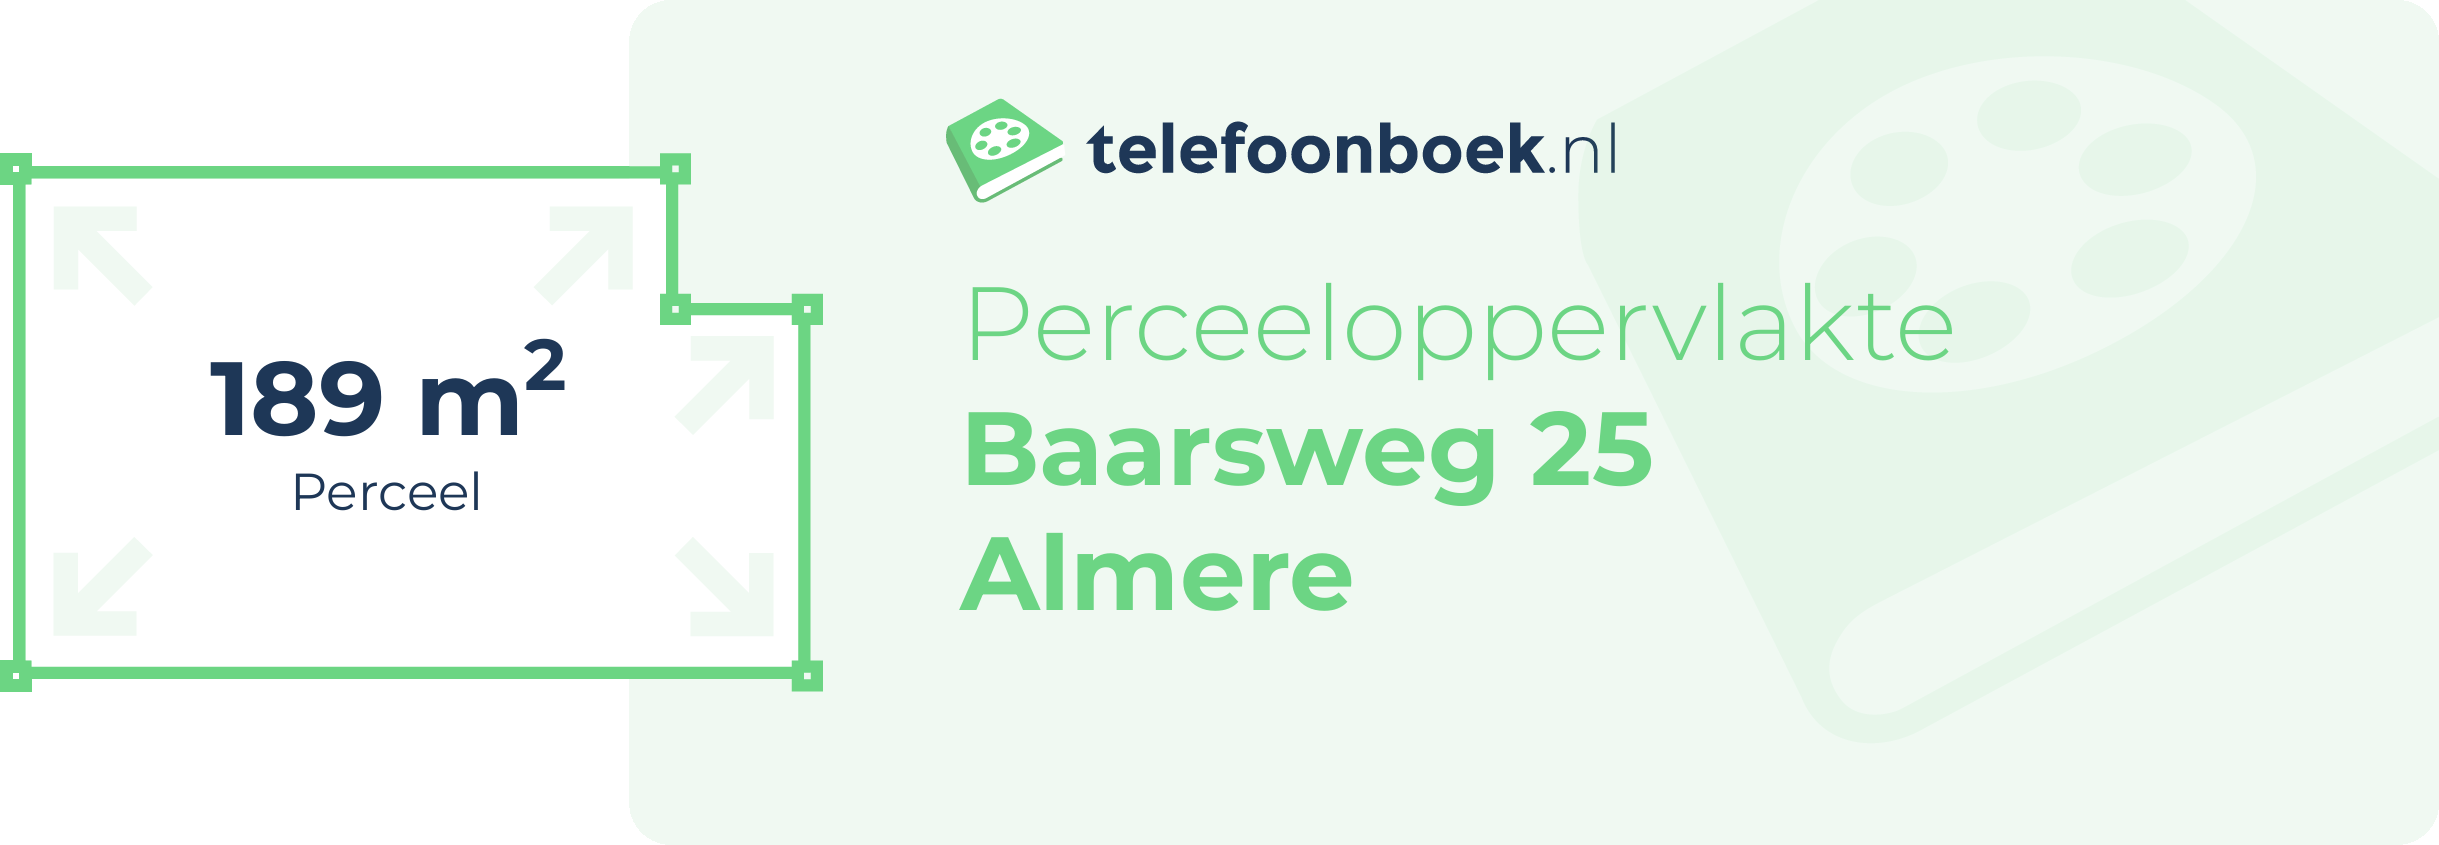 Perceeloppervlakte Baarsweg 25 Almere